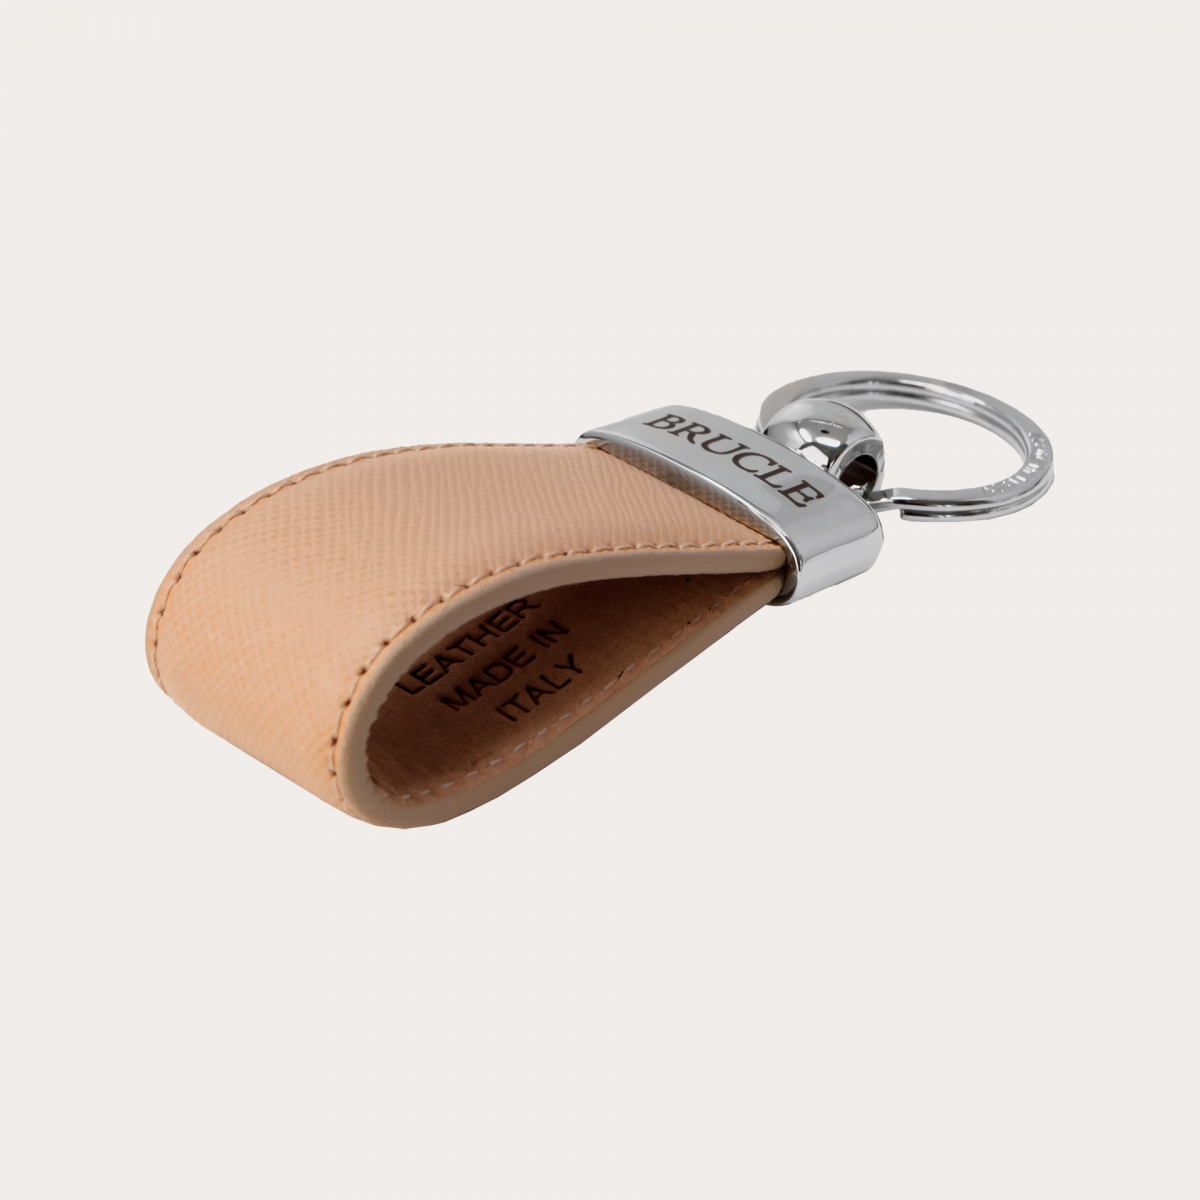 BRUCLE Schlüsselanhänger aus echtem Leder mit Saffiano-Prägung, taupe